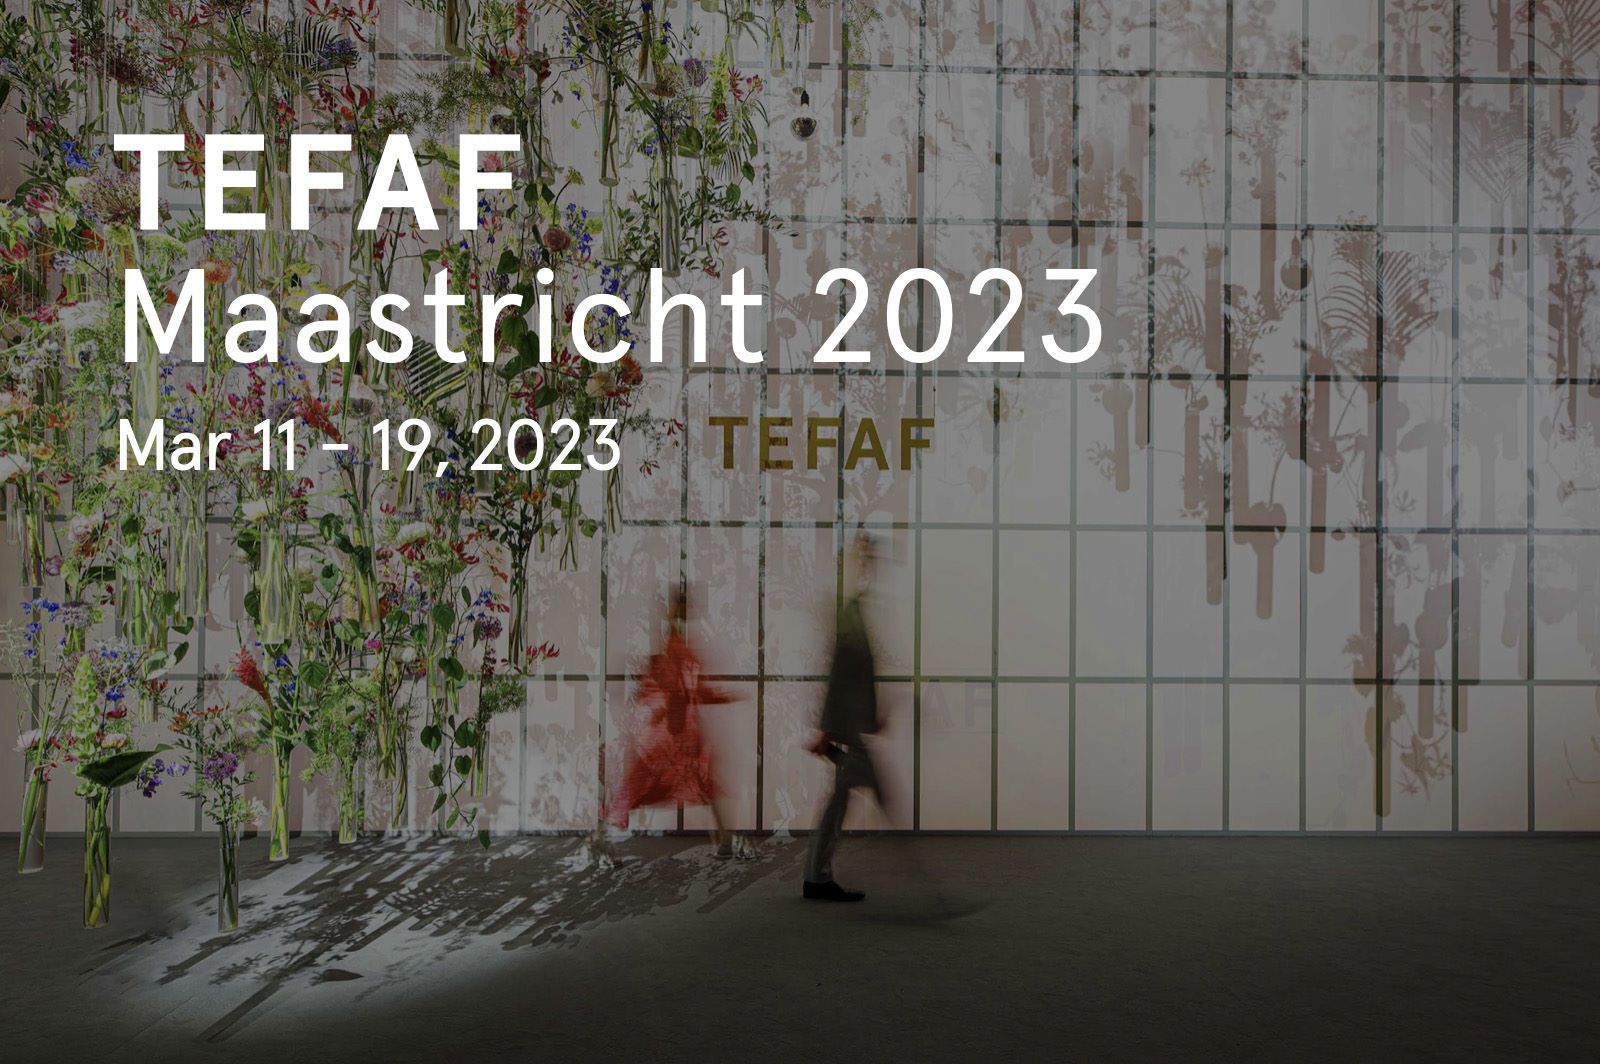 TEFAF Maastricht 2023